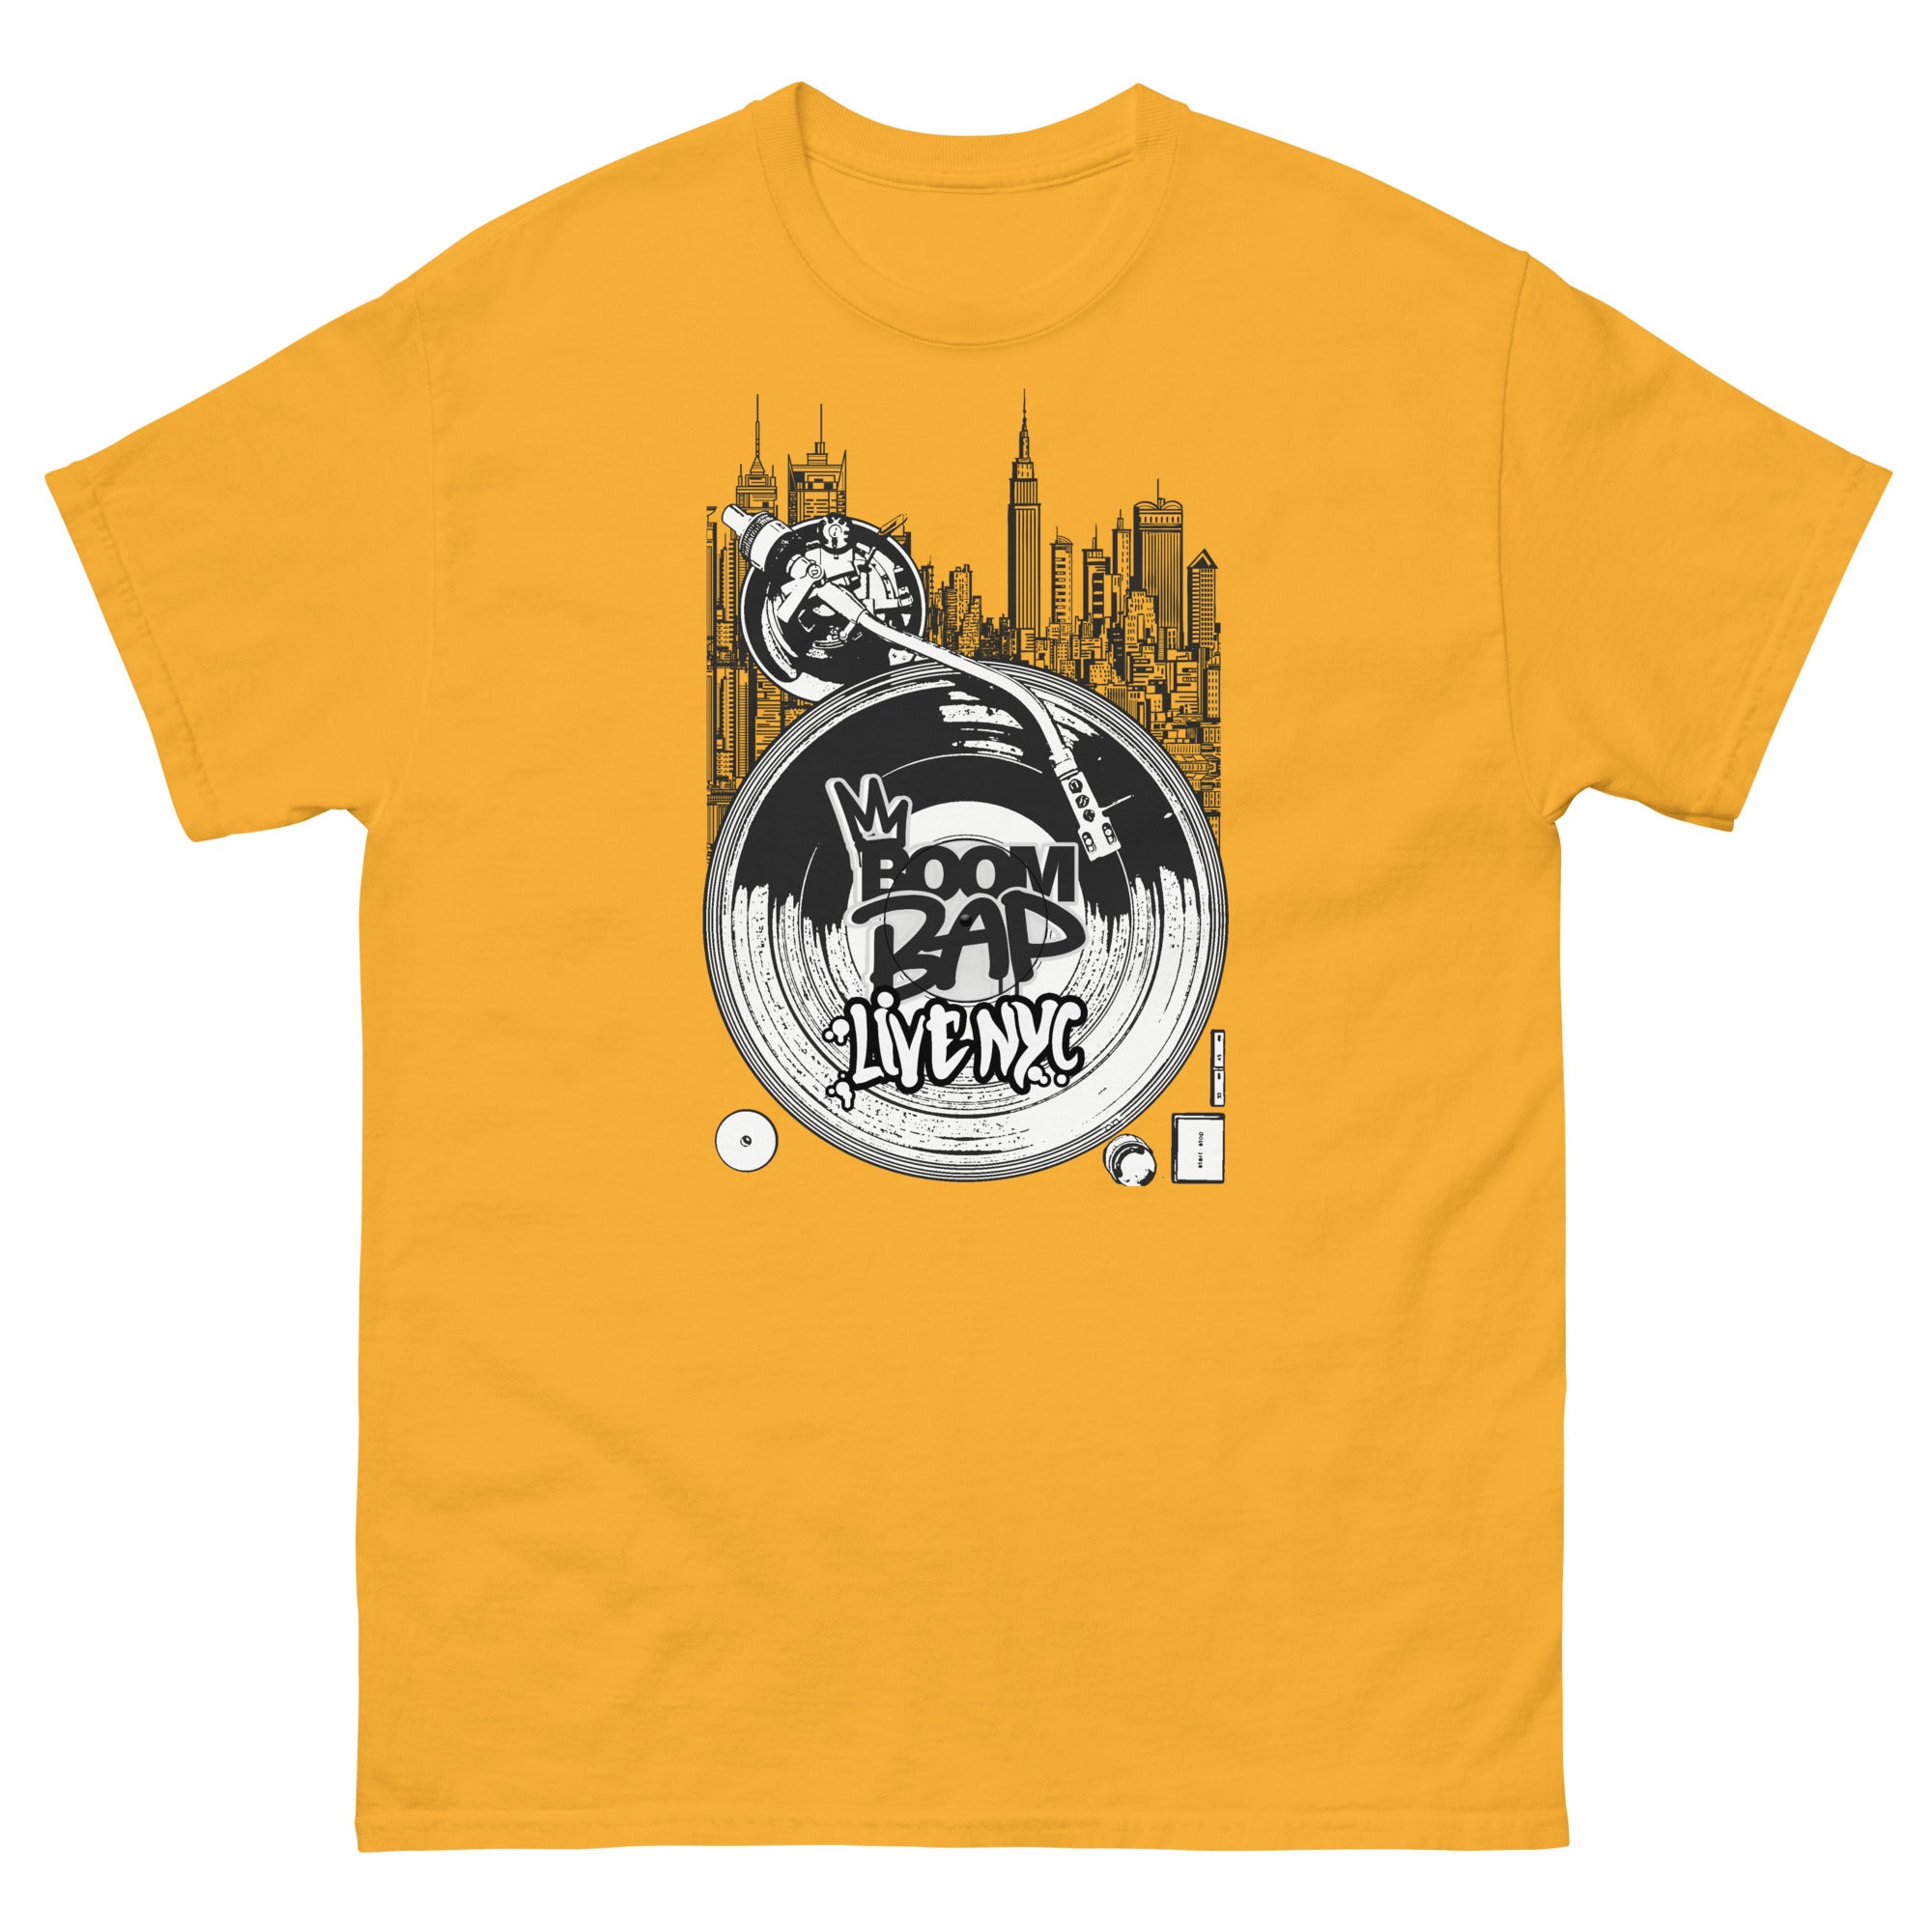 BOOM BAP LIVE NYC - Men's T-Shirt